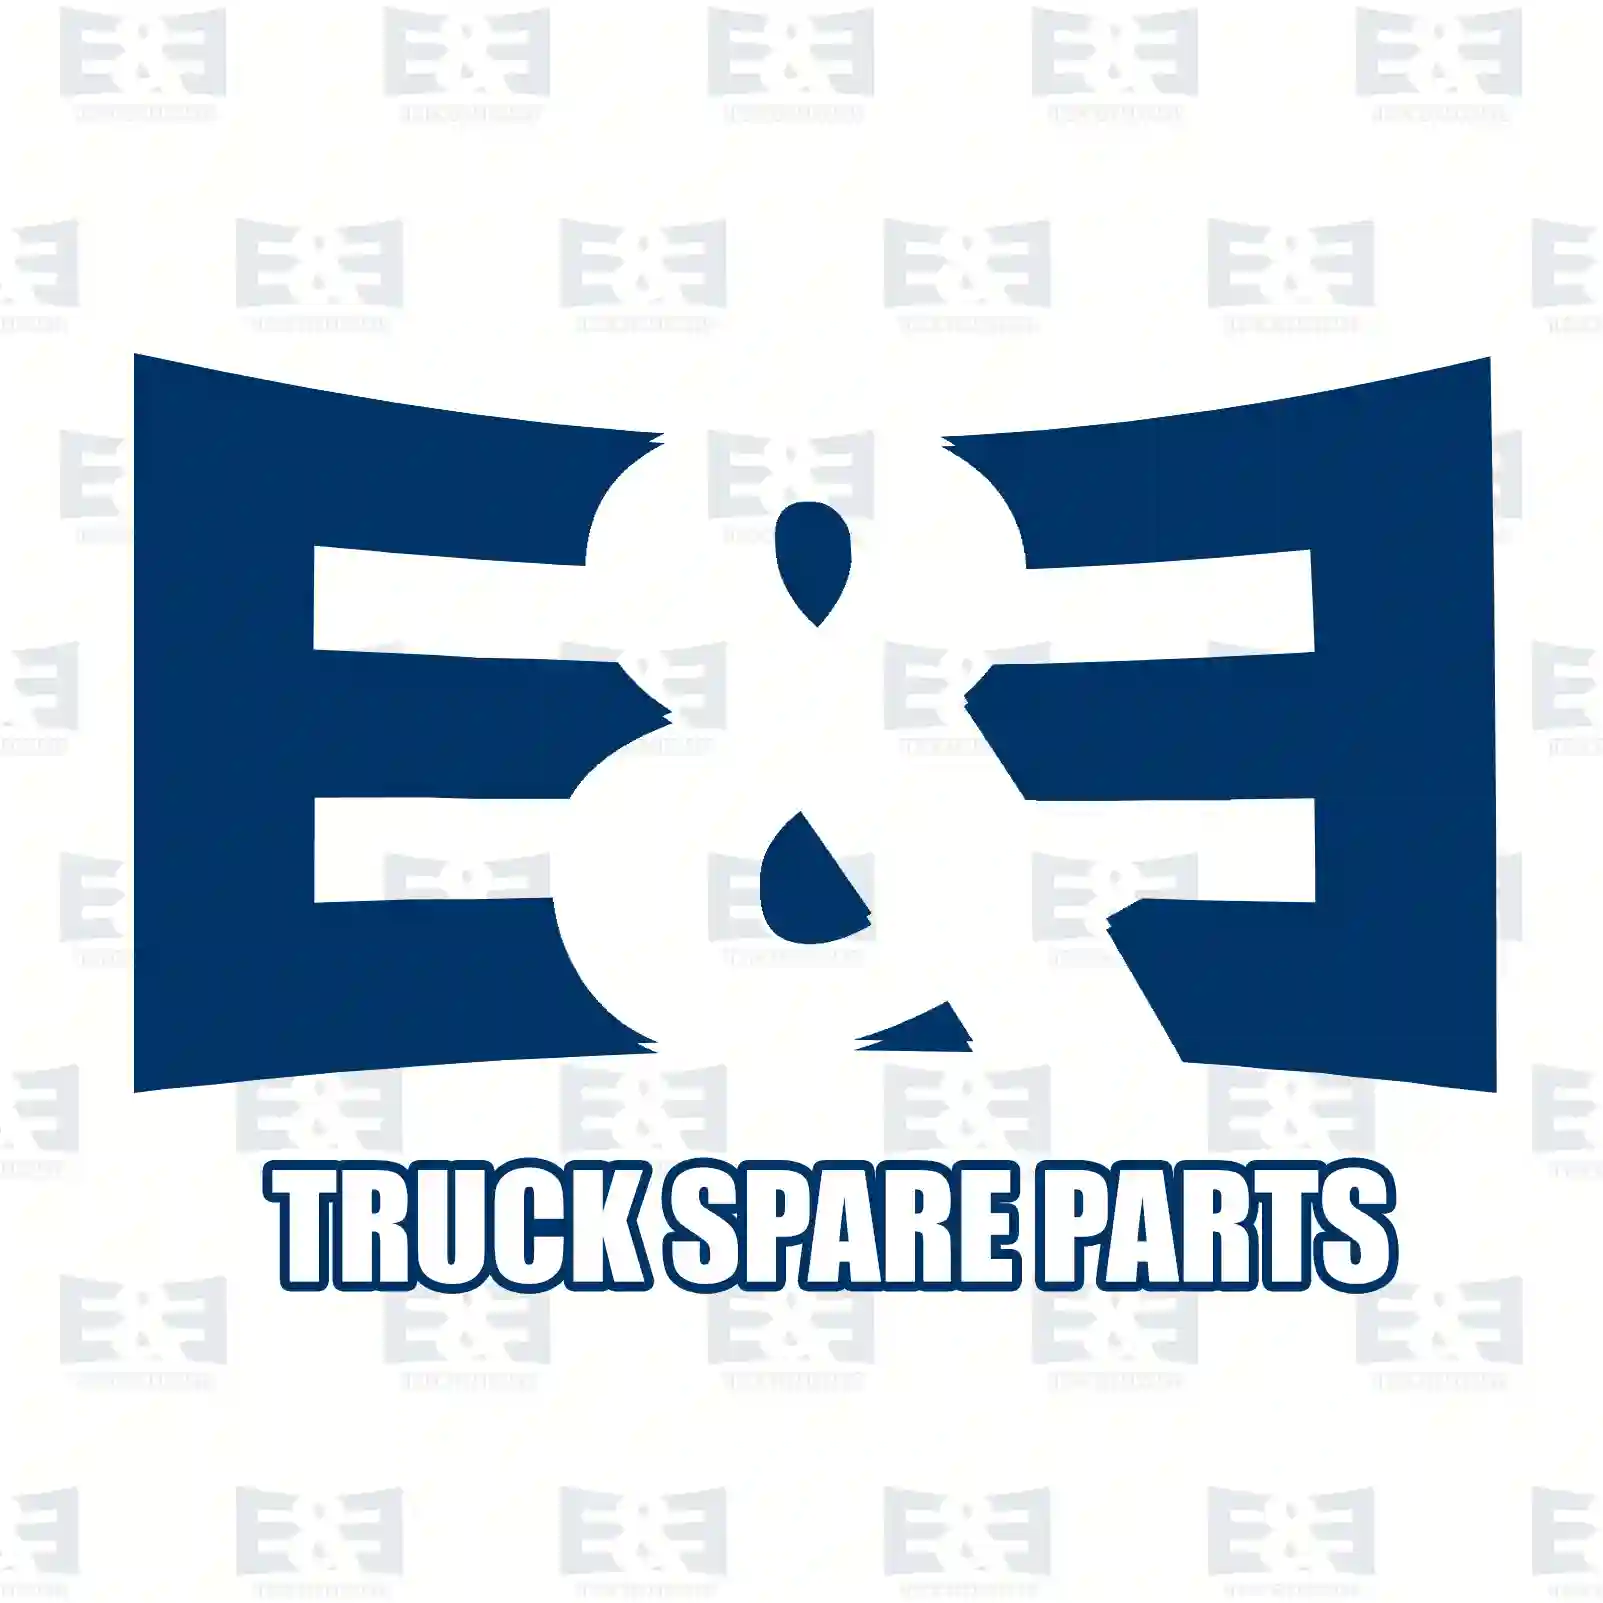 Propeller shaft, 2E2276735, 500304858, 5801547080, 99483385 ||  2E2276735 E&E Truck Spare Parts | Truck Spare Parts, Auotomotive Spare Parts Propeller shaft, 2E2276735, 500304858, 5801547080, 99483385 ||  2E2276735 E&E Truck Spare Parts | Truck Spare Parts, Auotomotive Spare Parts